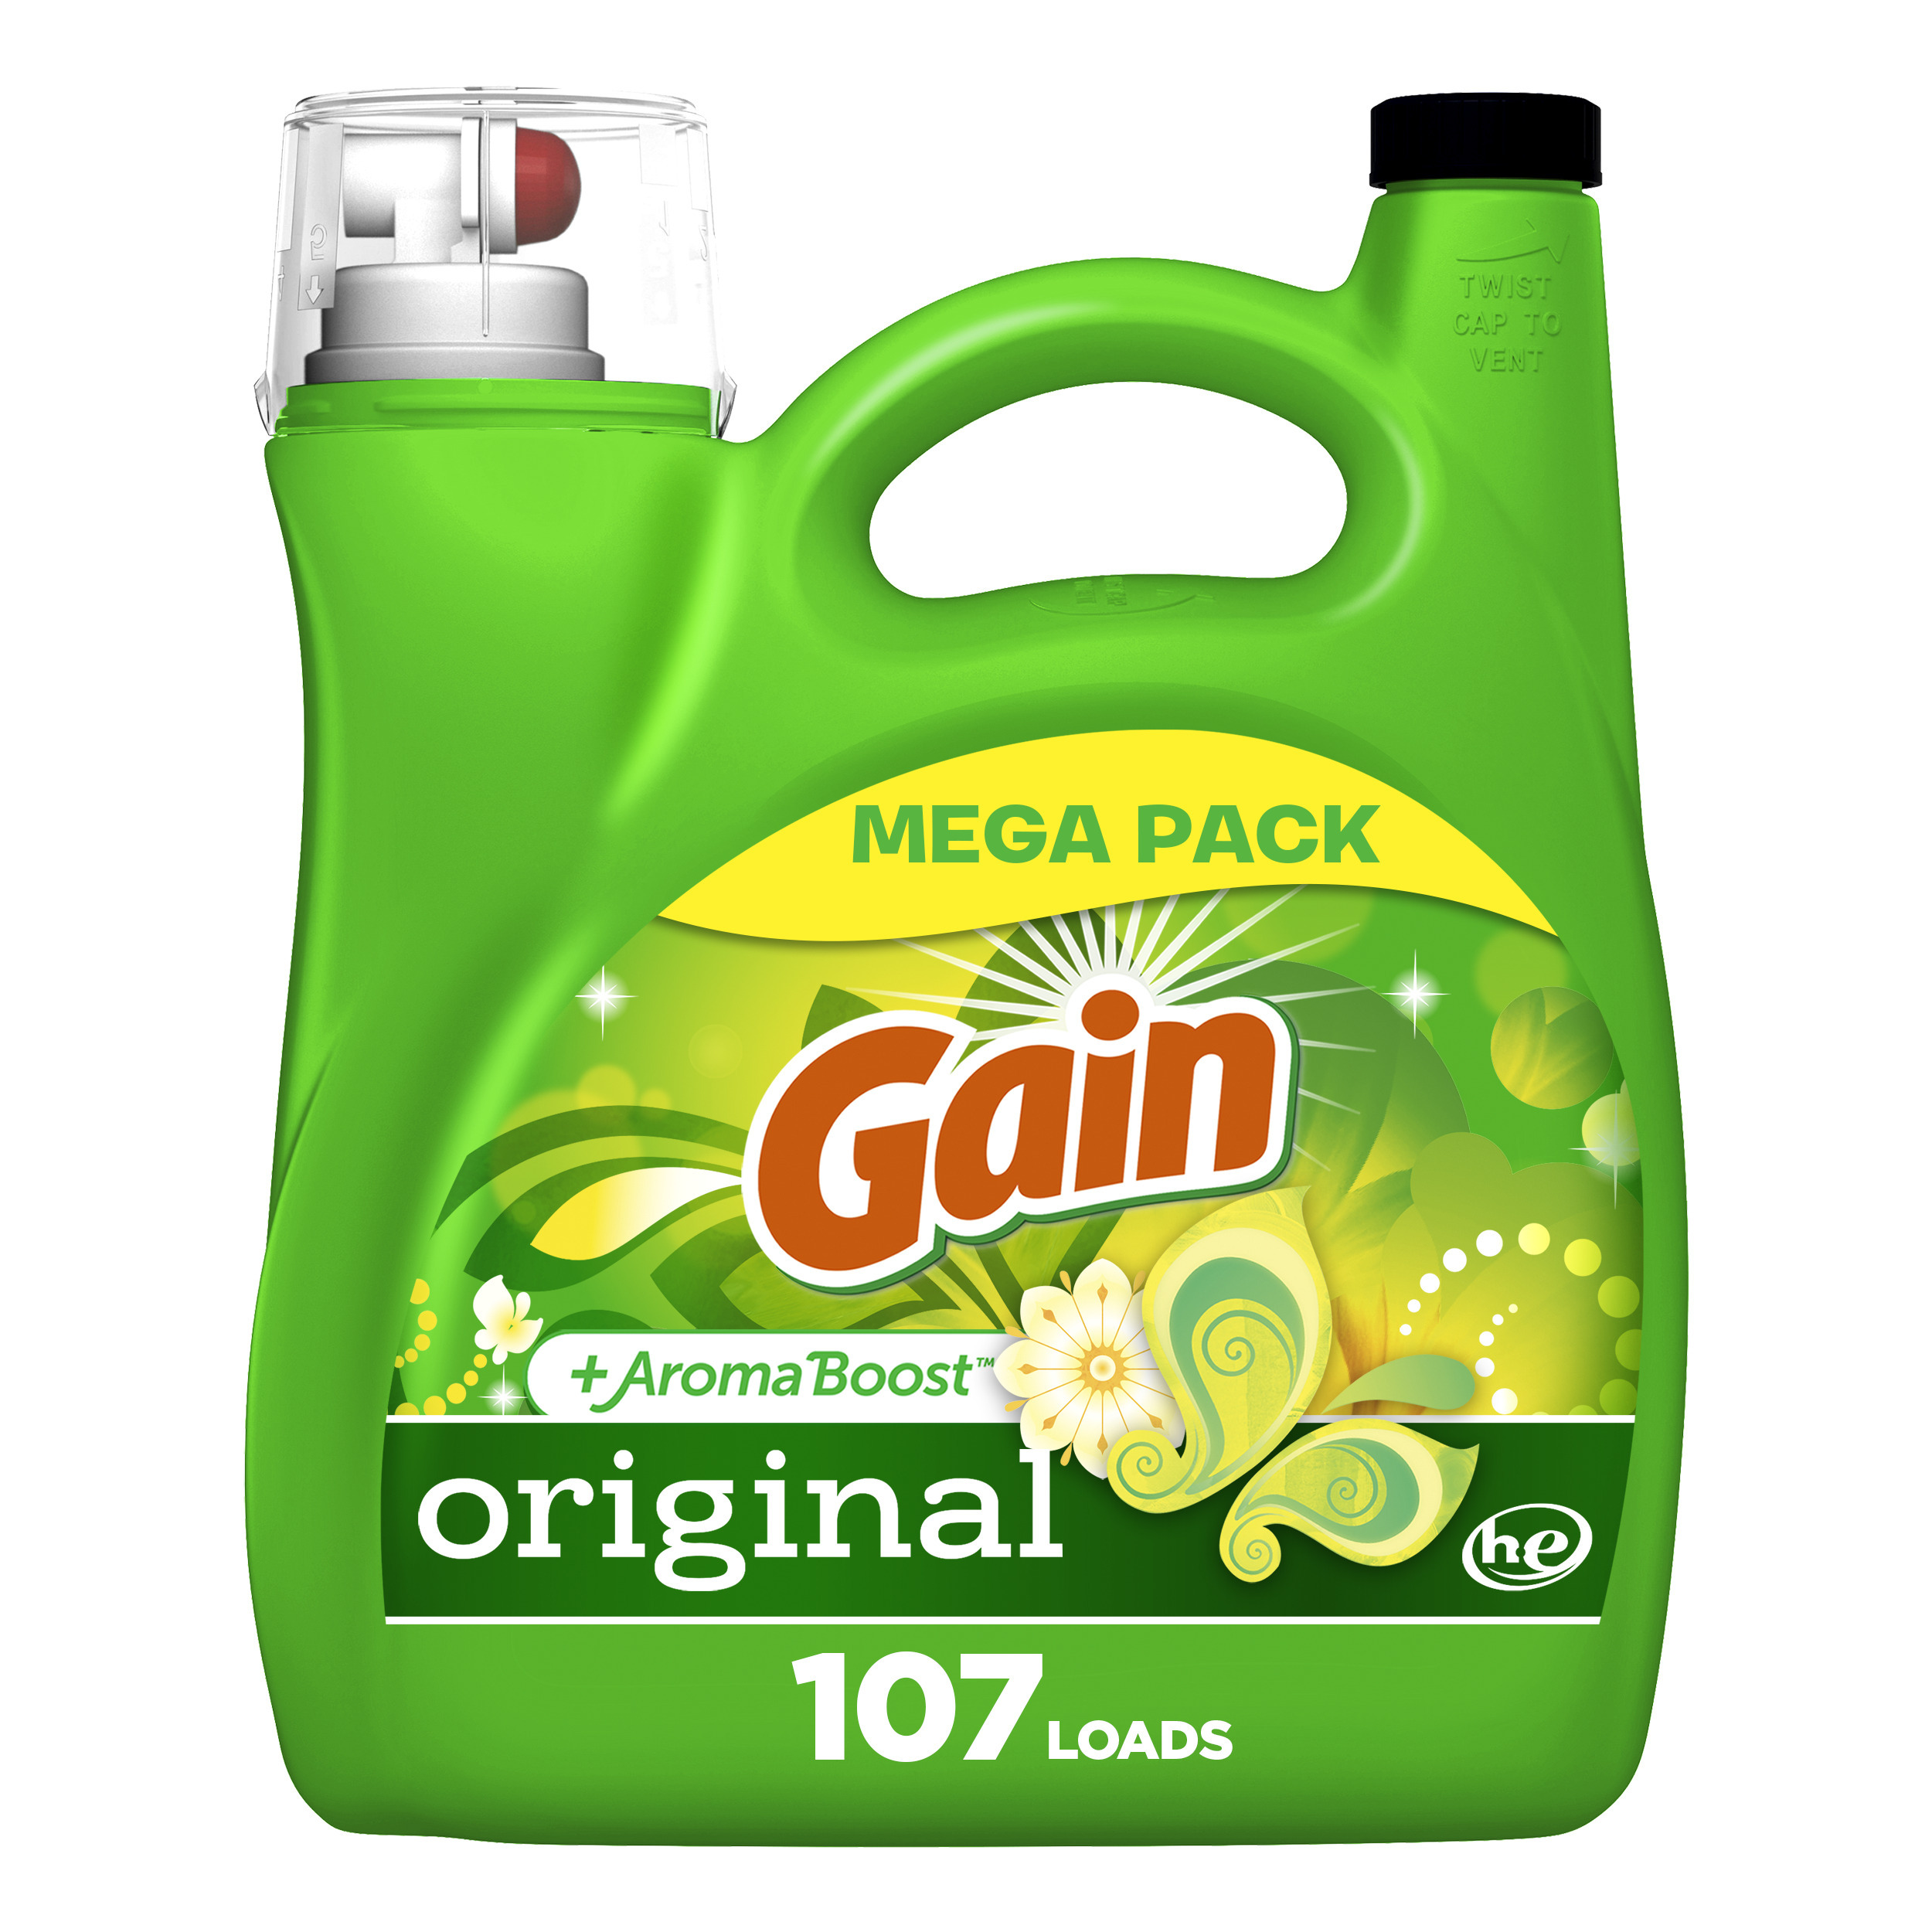 Gain + Aroma Boost Liquid Laundry Detergent, Original Scent, 107 Loads, 154 fl oz - image 1 of 9